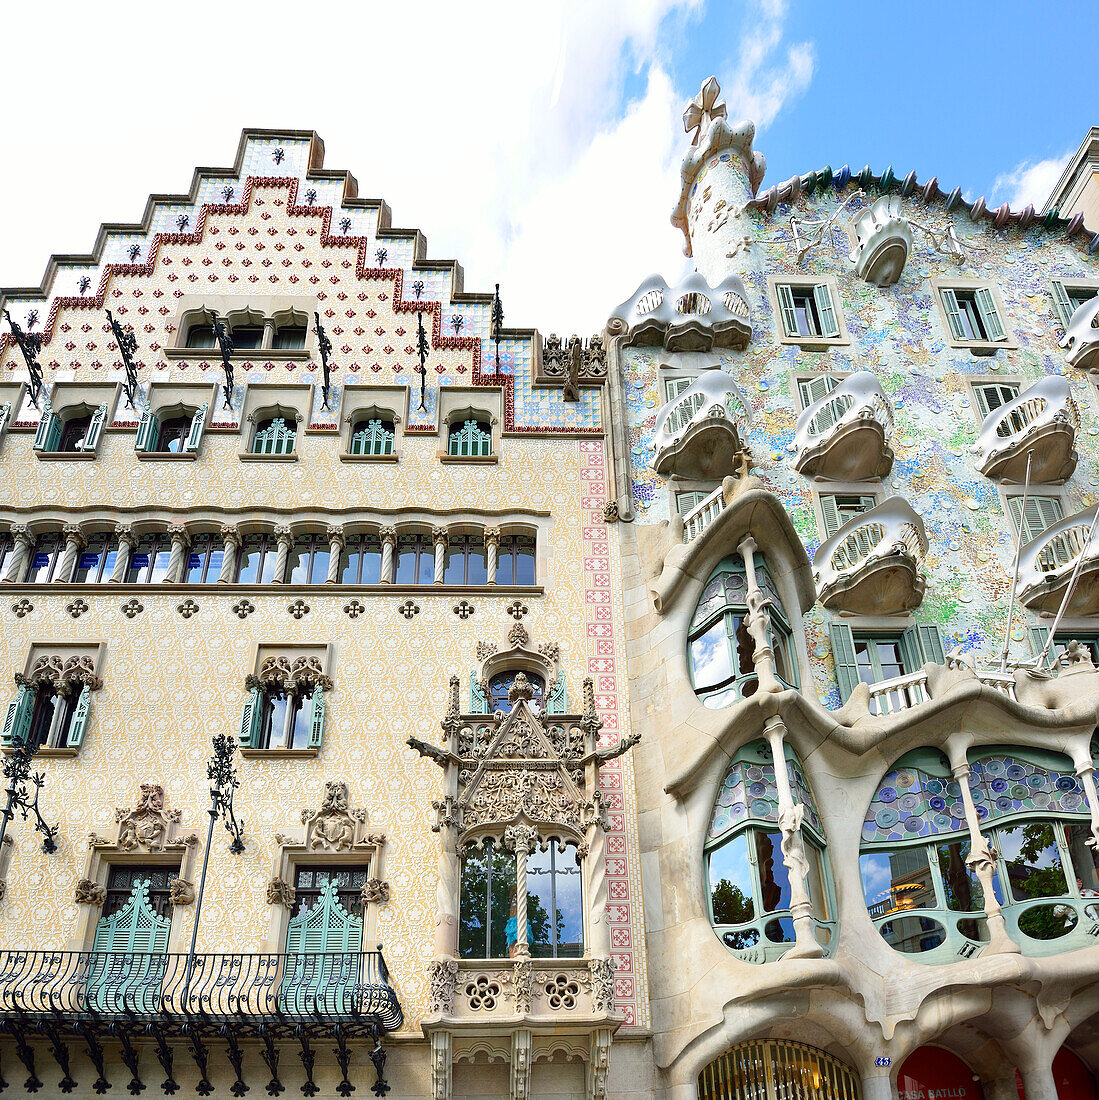 Casa Amatller und Casa Batlló, Architekt Antoni Gaudi, UNESCO Weltkulturerbe Arbeiten von Antoni Gaudi, Modernisme, Jugendstil, Eixample, Barcelona, Katalonien, Spanien